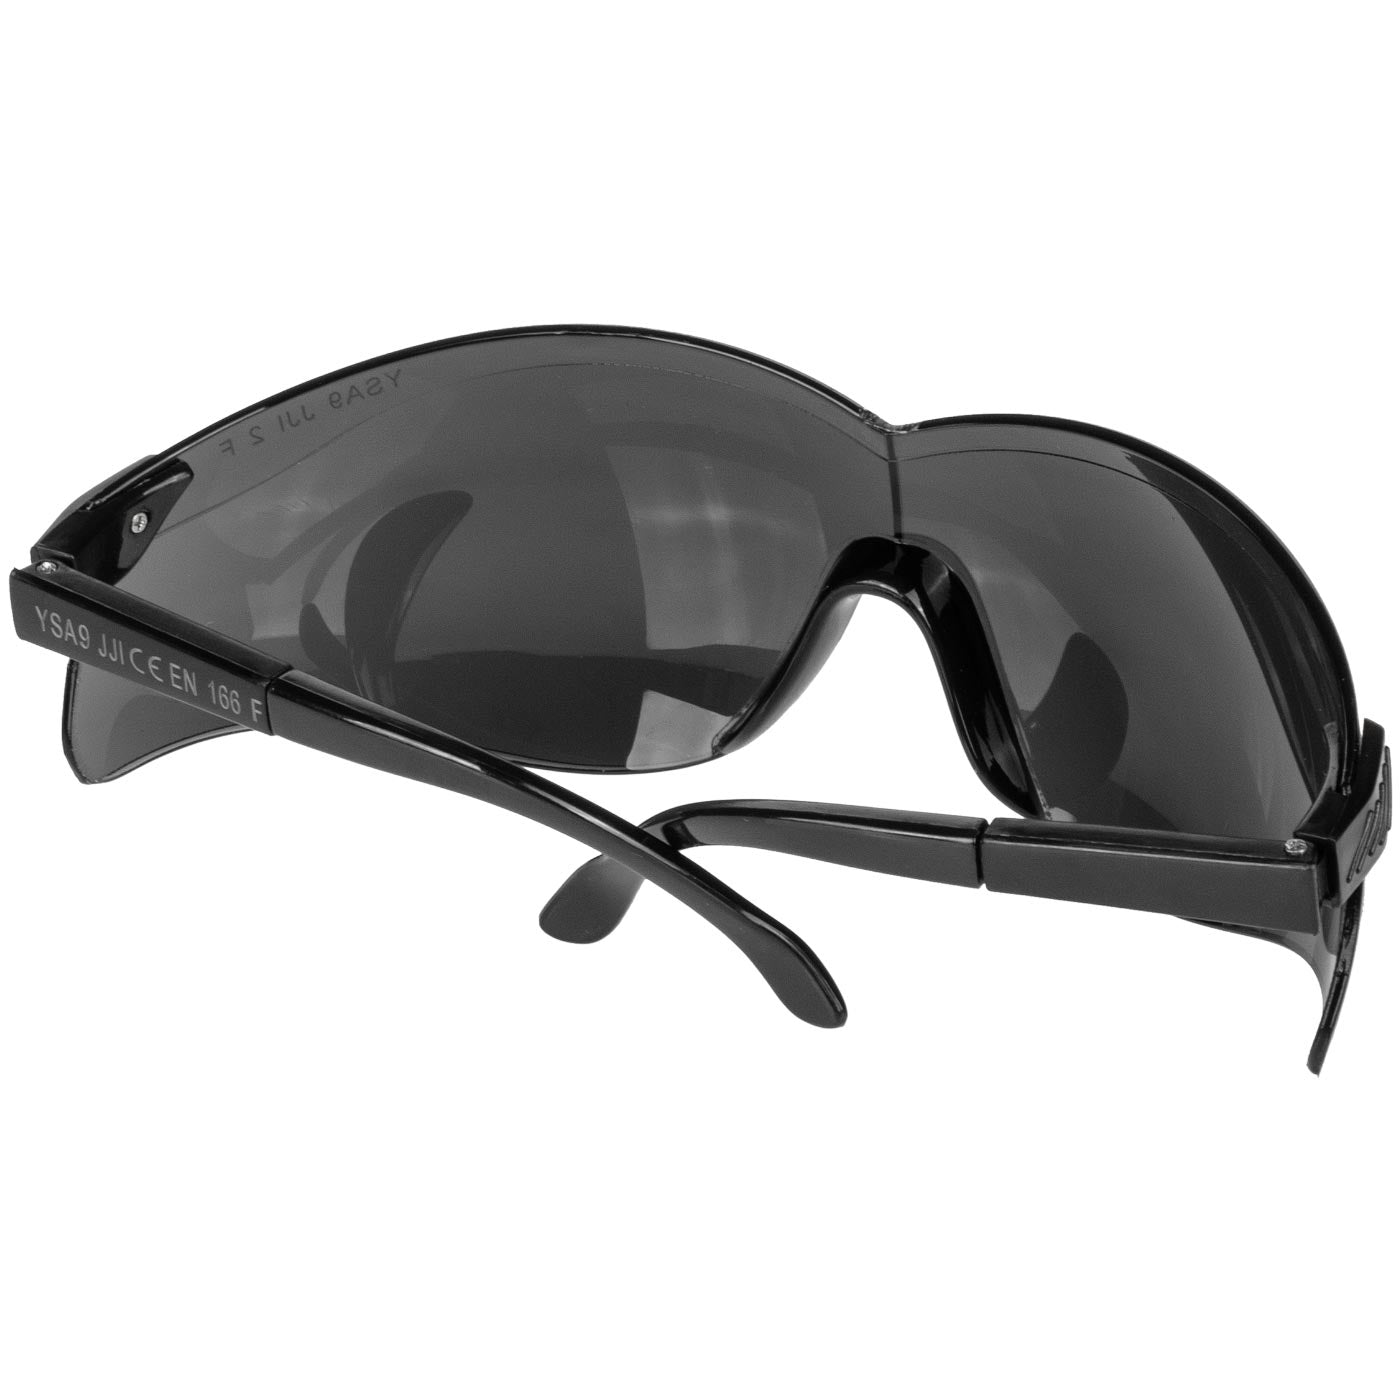 Okulary przeciwodpryskowe ysa9 czarne, regulowane zauszniki ce en166 | C0022 - Centrum Techniczne Gałązka